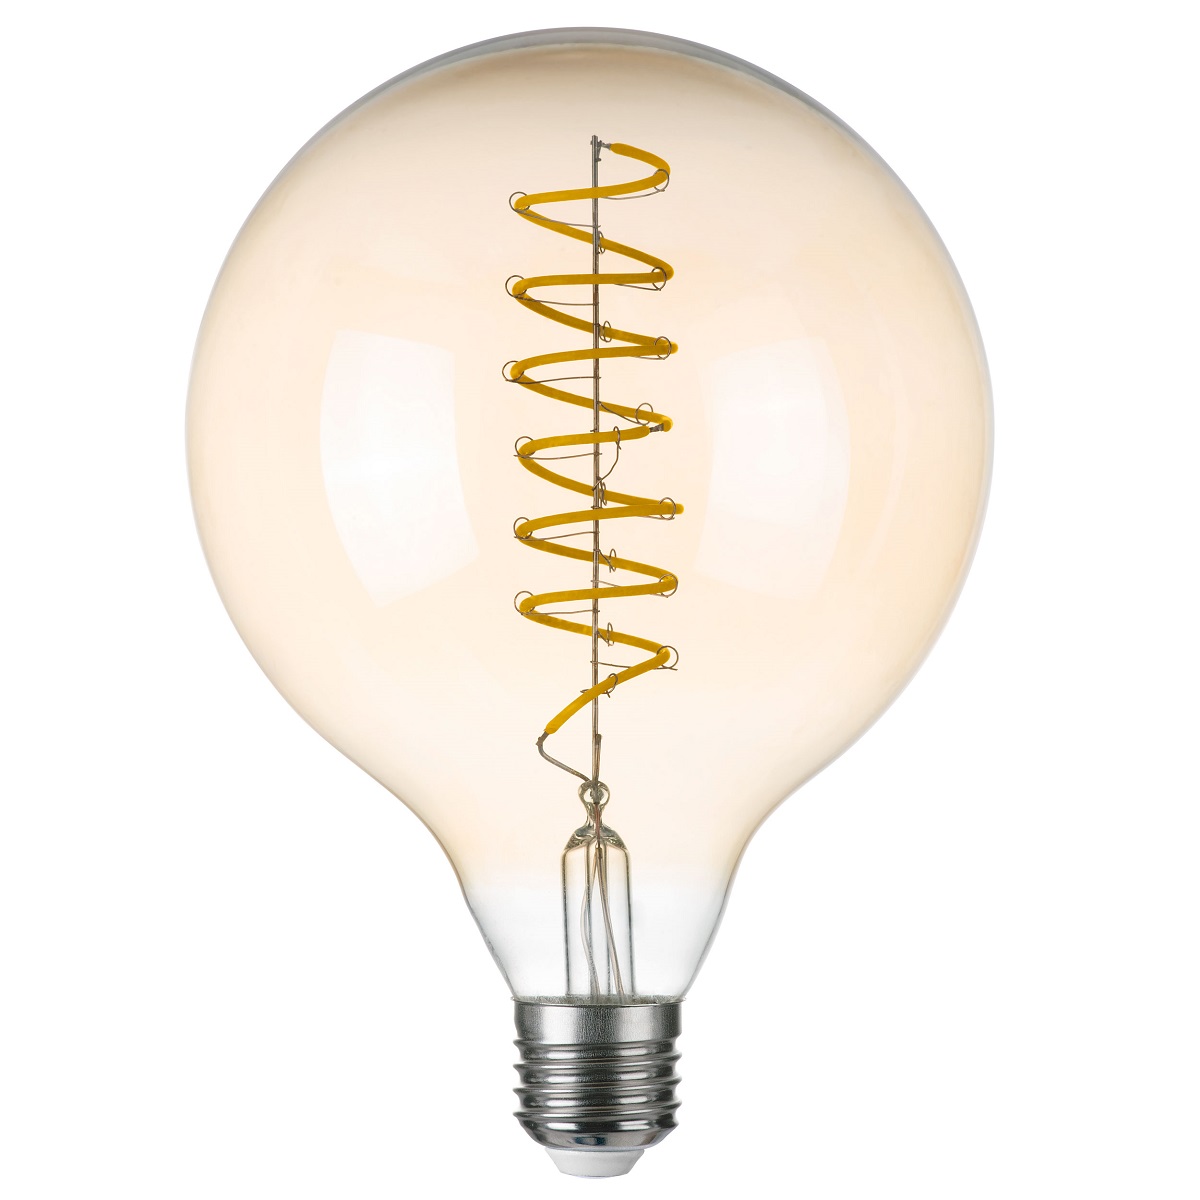 

Лампа светодиодная филаментная Lightstar LED Filament E27 8W 3000K груша янтарная 933302, Янтарный, 933302 LED Filament